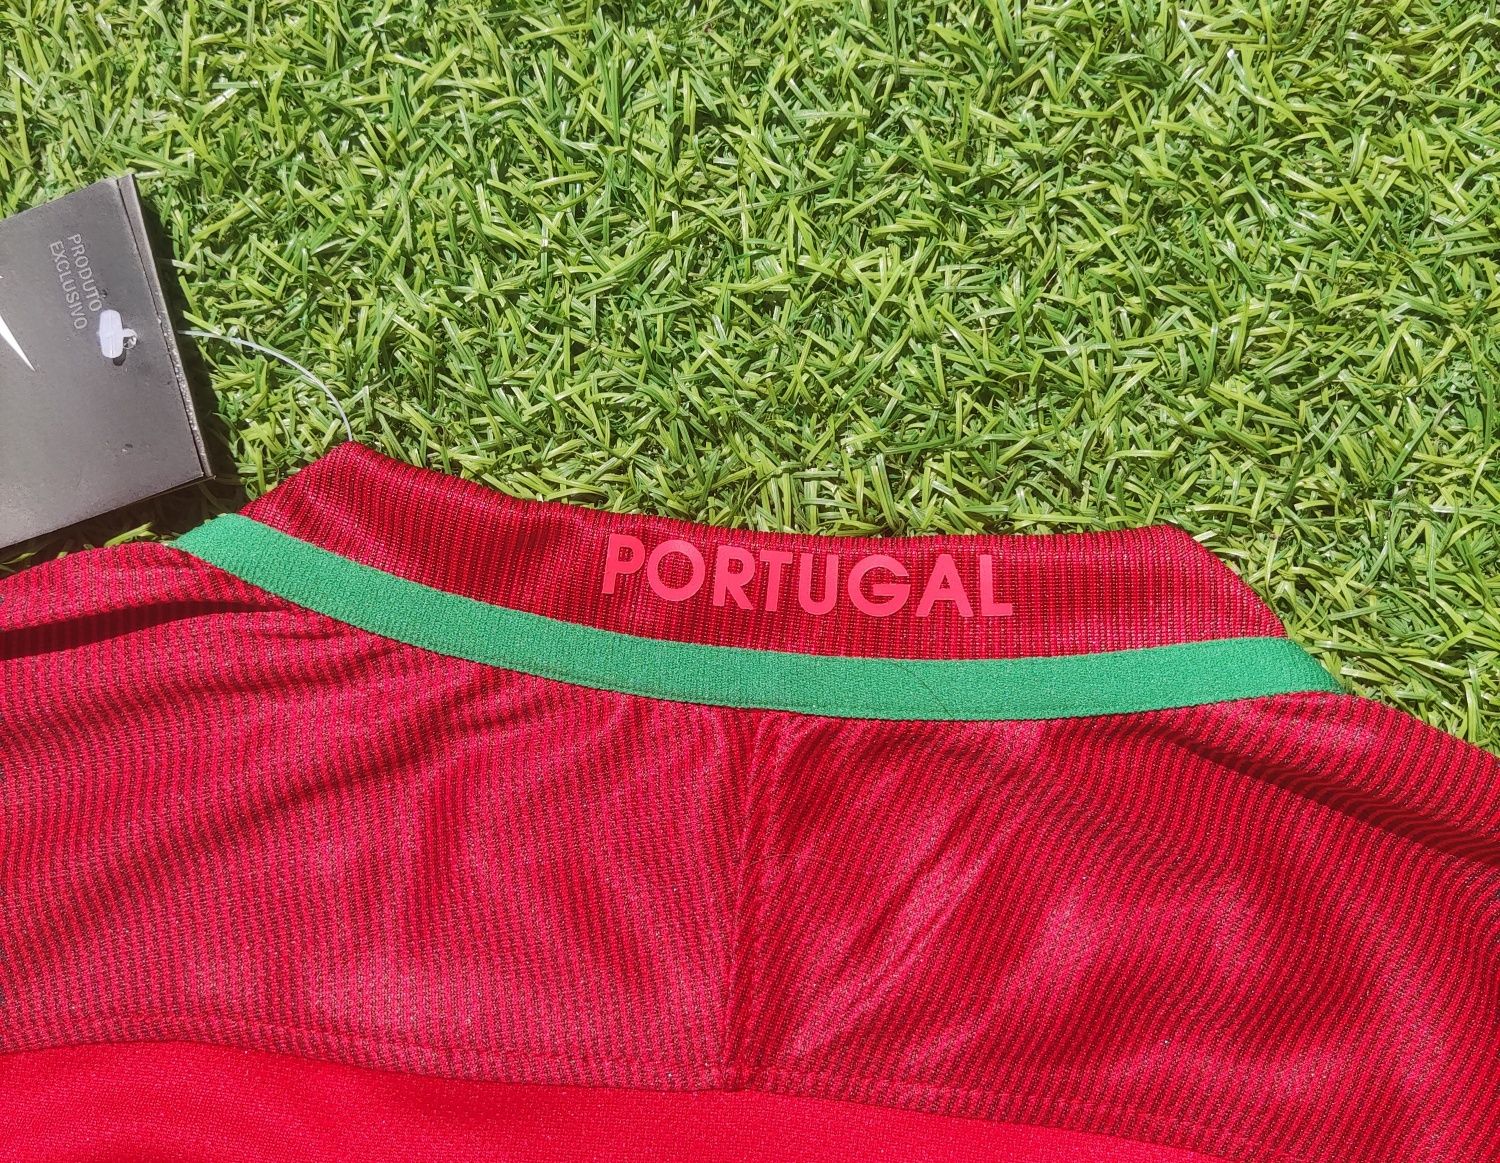 Portugal 2016 Ronaldo 7 M Retro